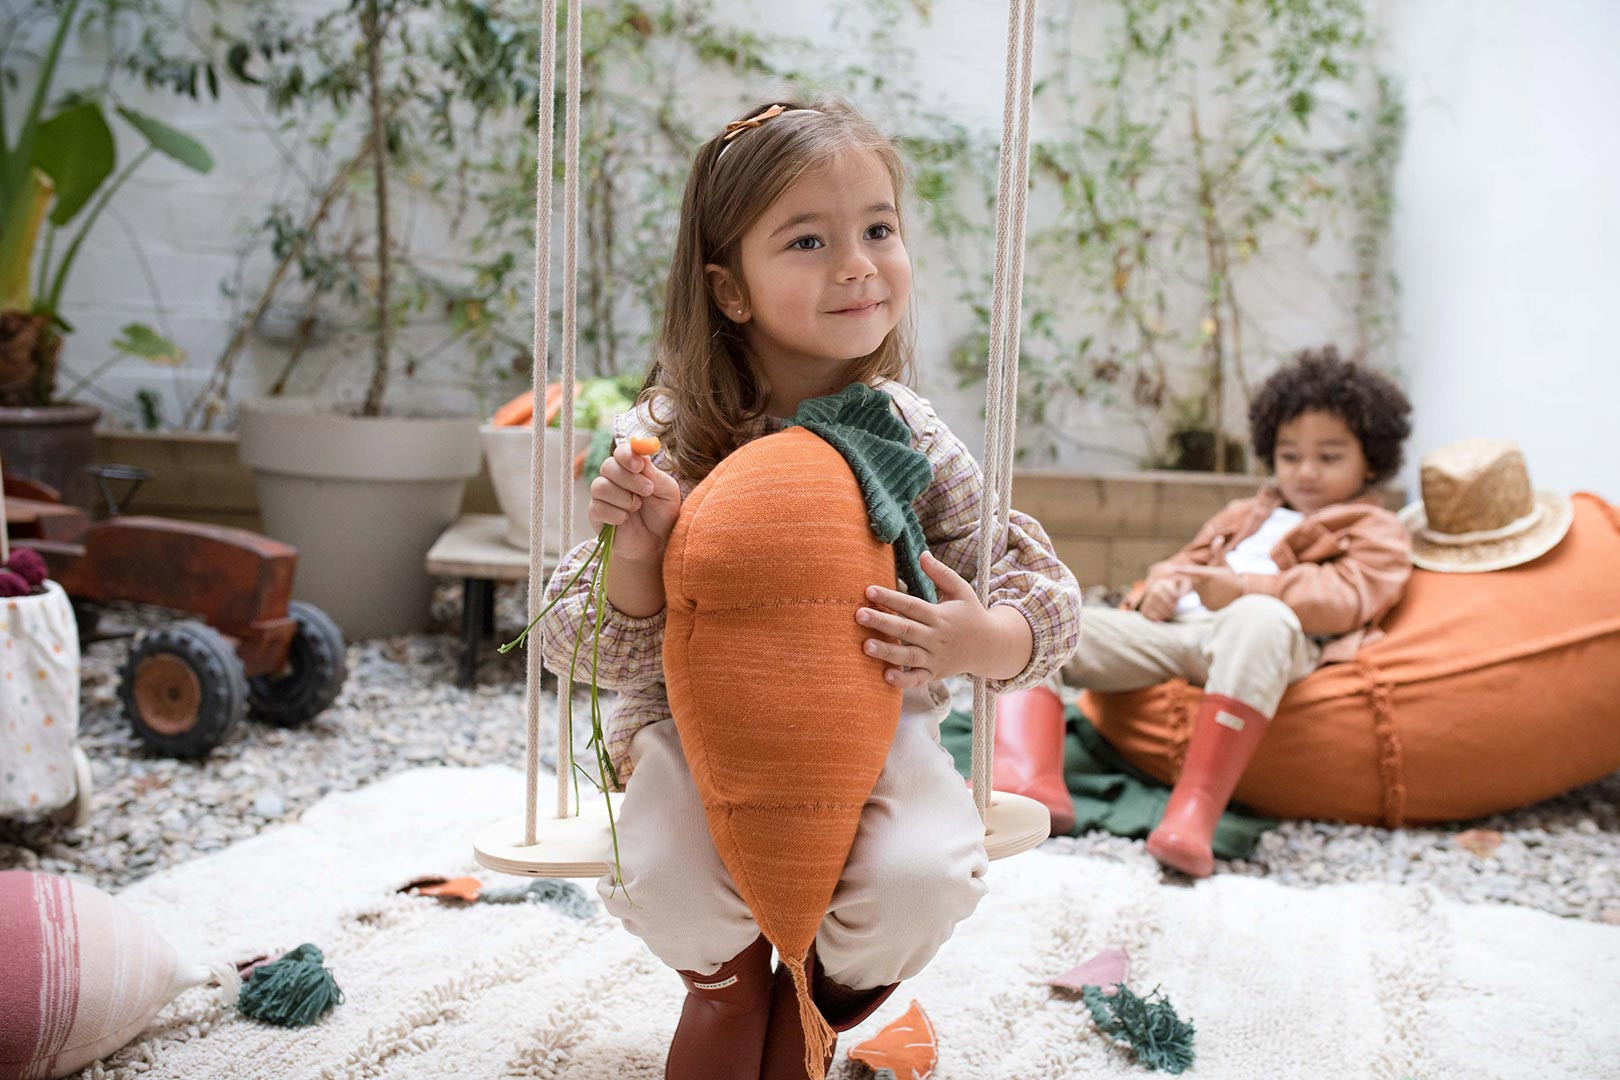 Coussin enfant tricoté carotte Cathy